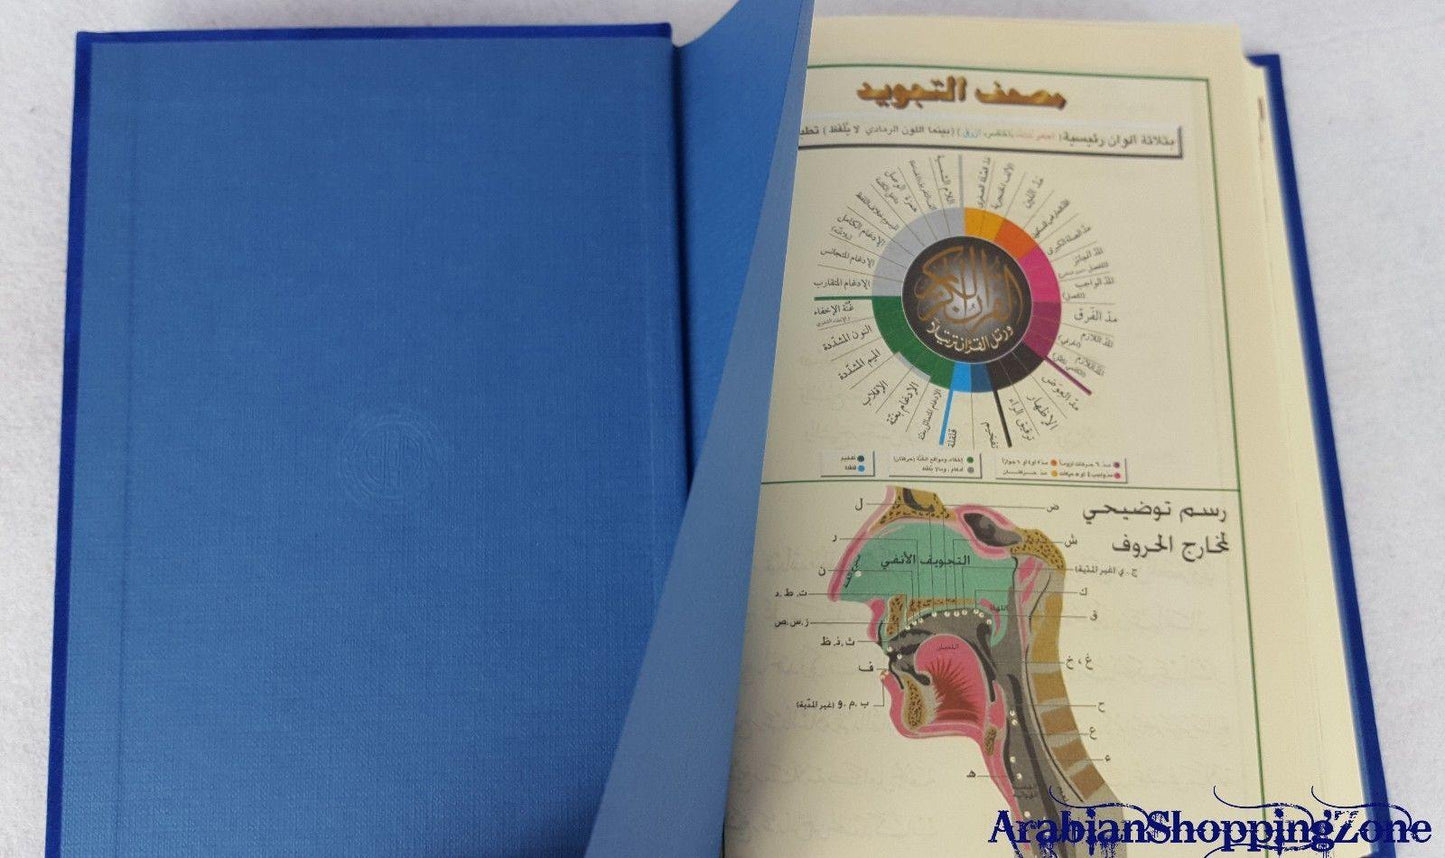 Tajwid Plush Velvet Hard Cover Tajweed & Memorization Quran 8" (20*14cm) - Arabian Shopping Zone